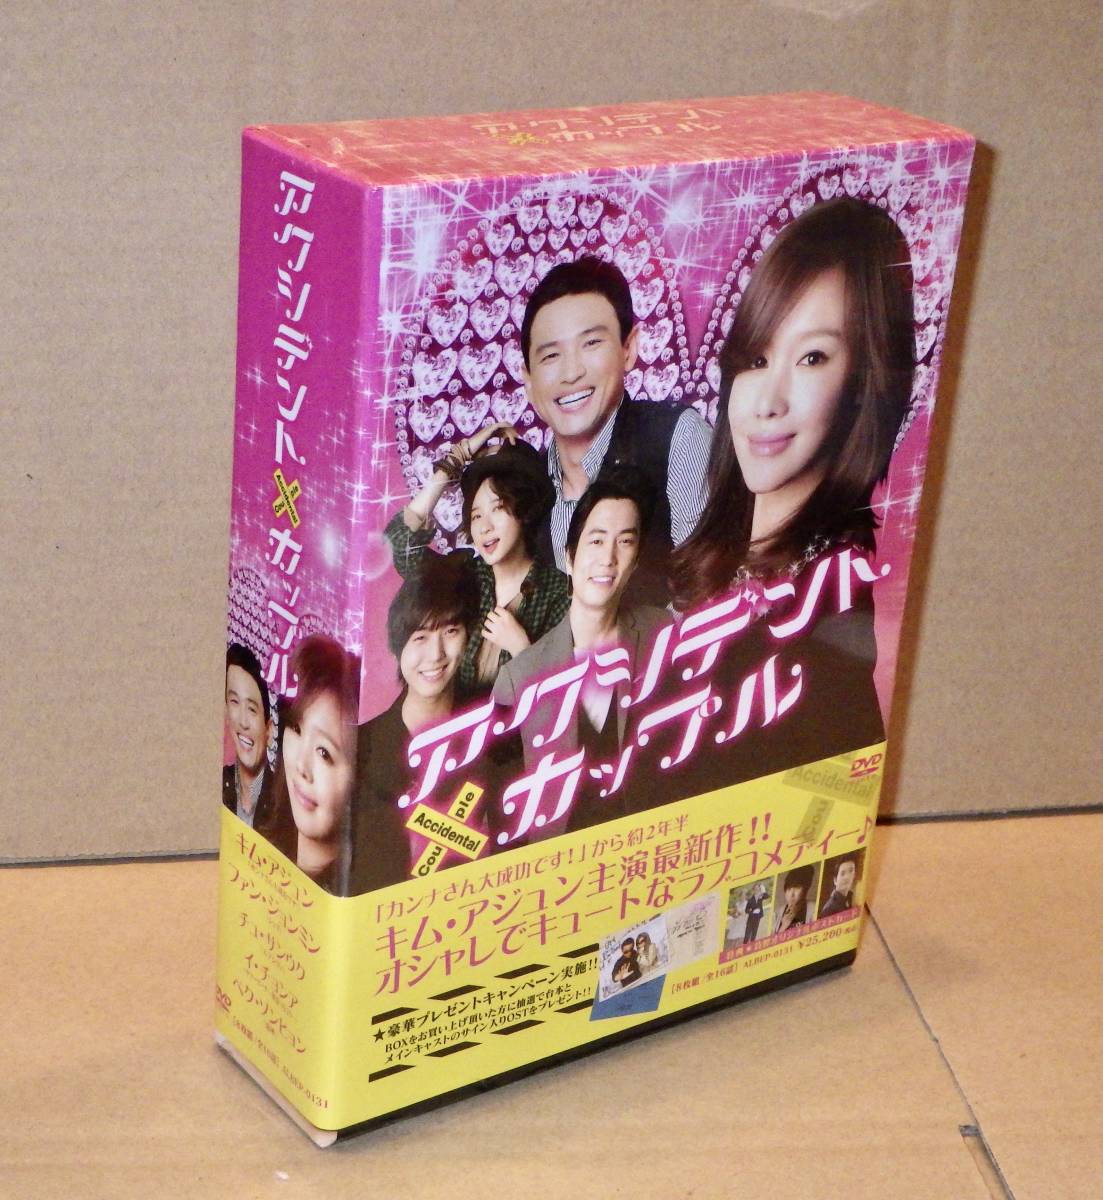 アクシデント カップル DVD-BOX 8枚組/全16話収録 韓国ドラマ/韓流 